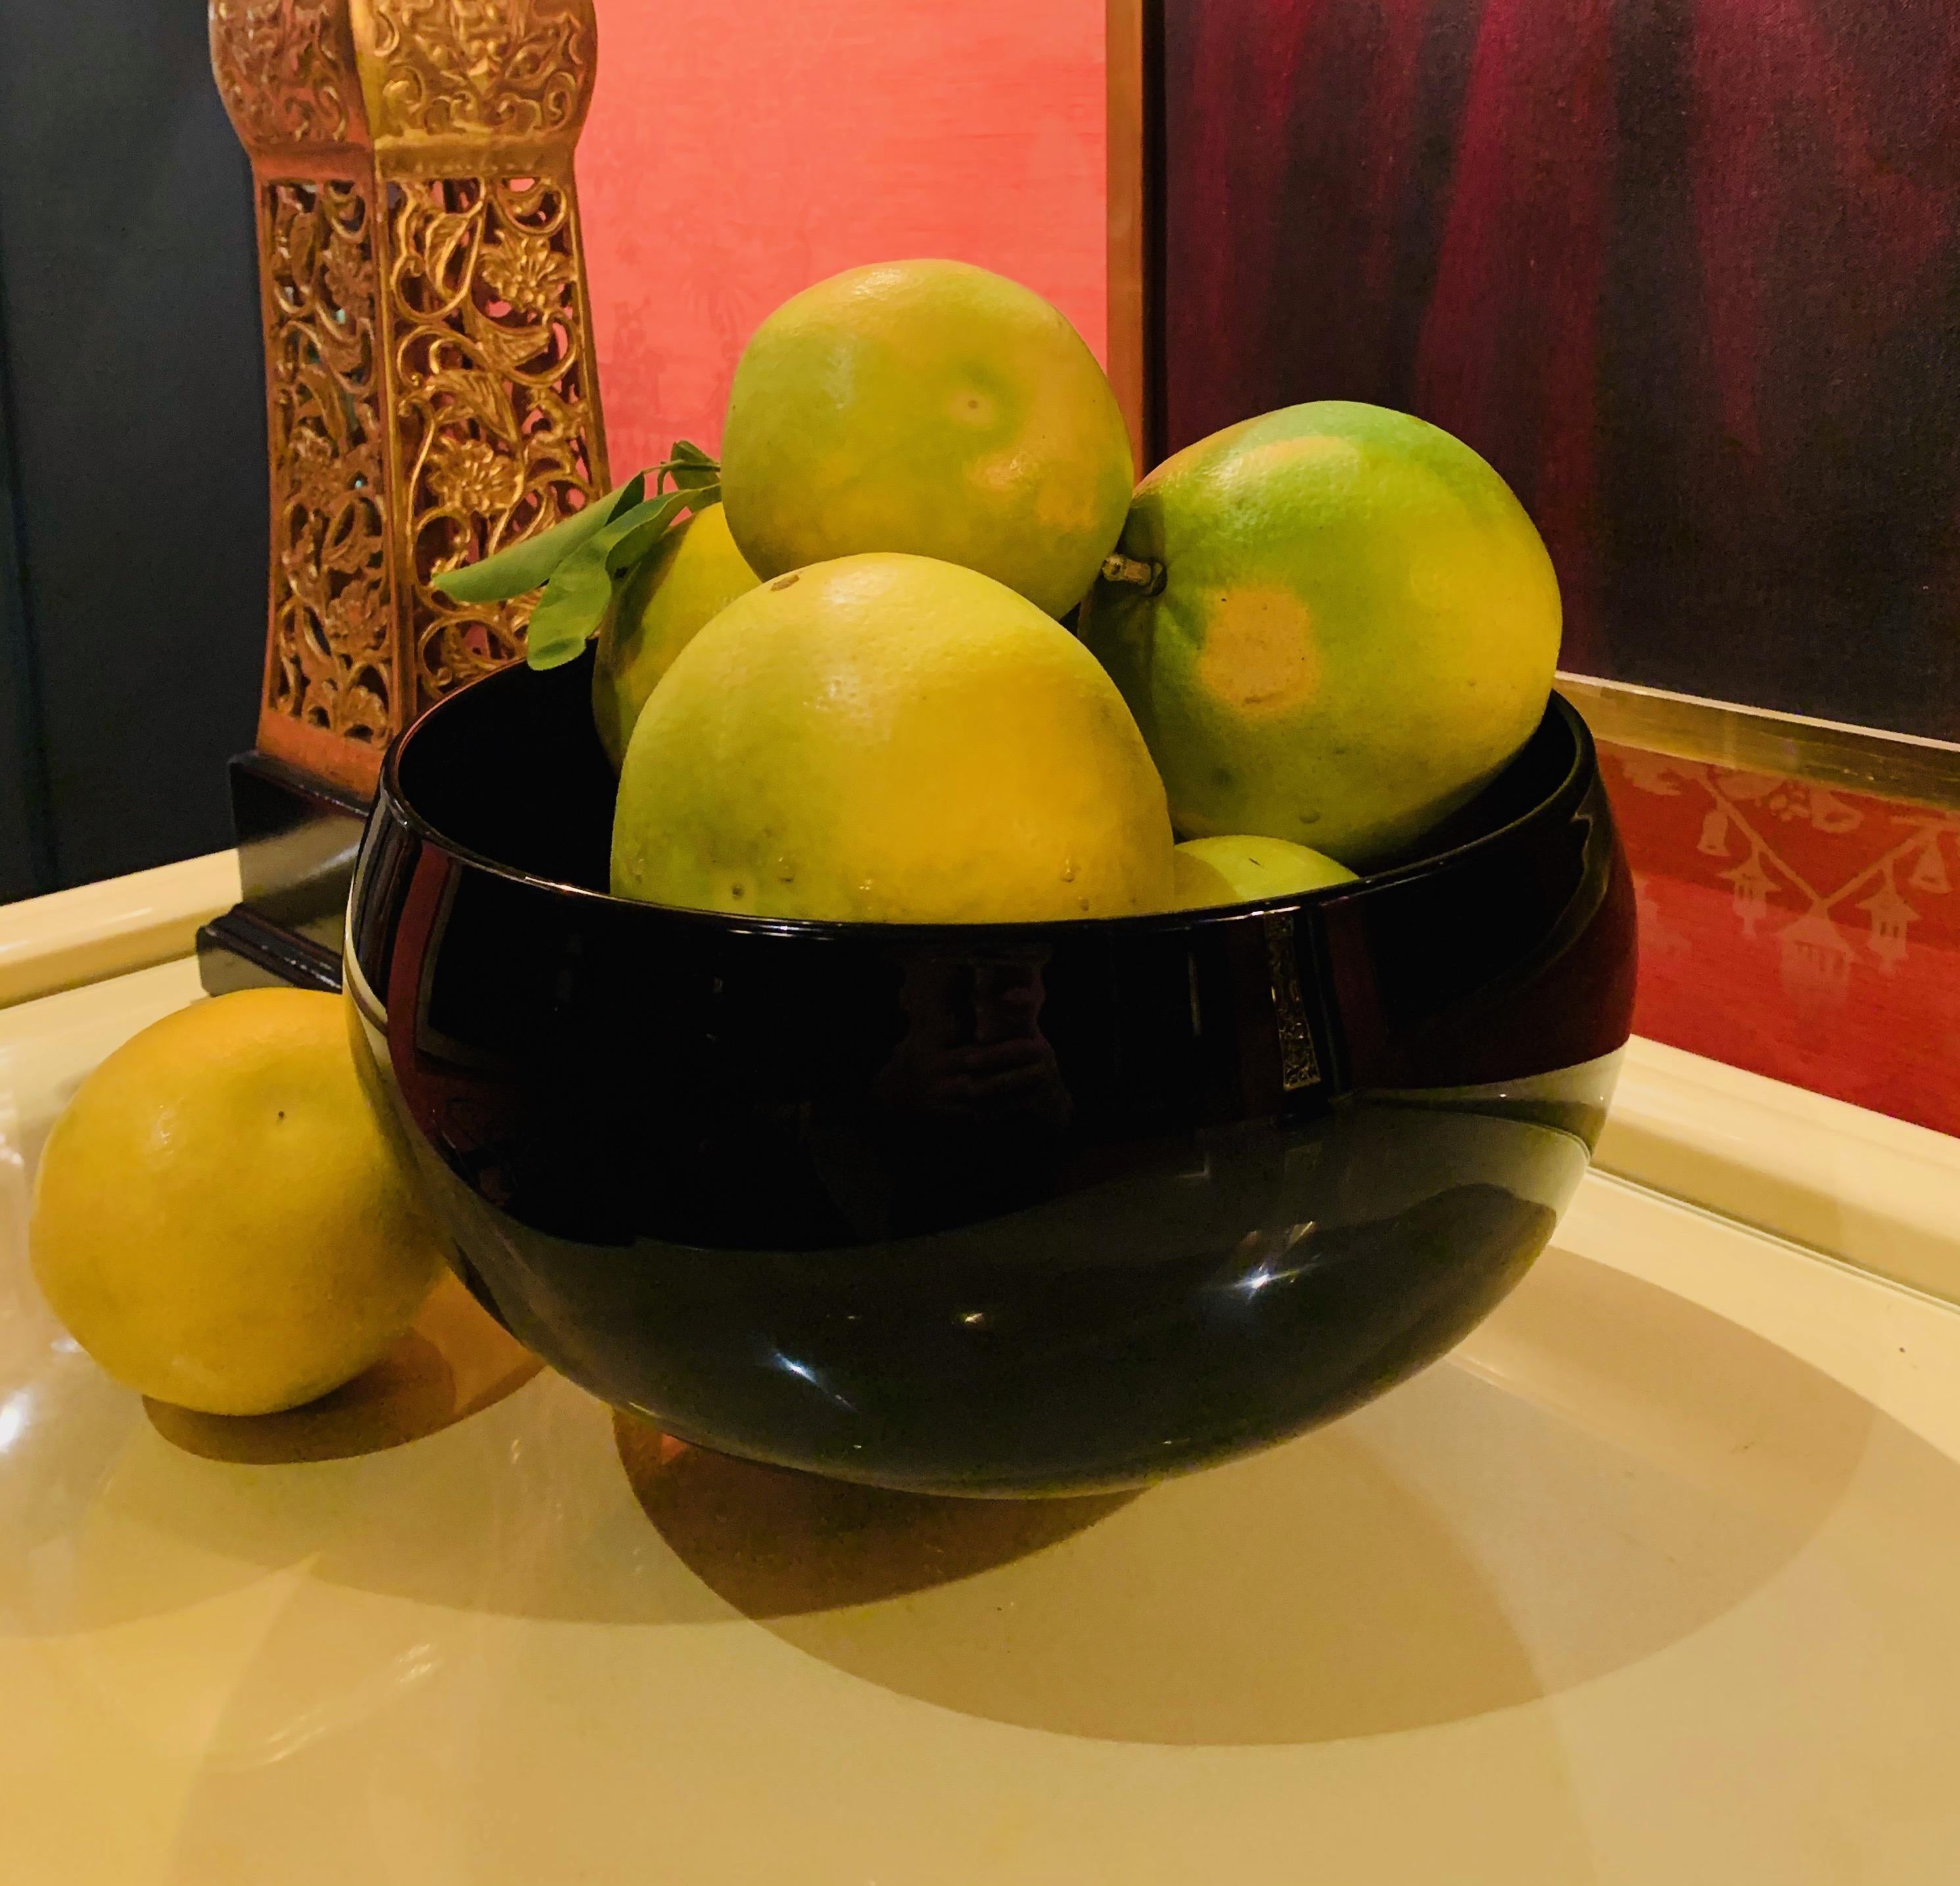 Eine spektakuläre Correia Art Glass Schale - groß, rund und schlicht, aber die perfekte Ergänzung für jeden Tisch. Der kleine Fuß, auch einfach und elegant.

Allein stehend oder als Kunstwerk sieht die subtile Aubergine-Farbe für das Auge schwarz